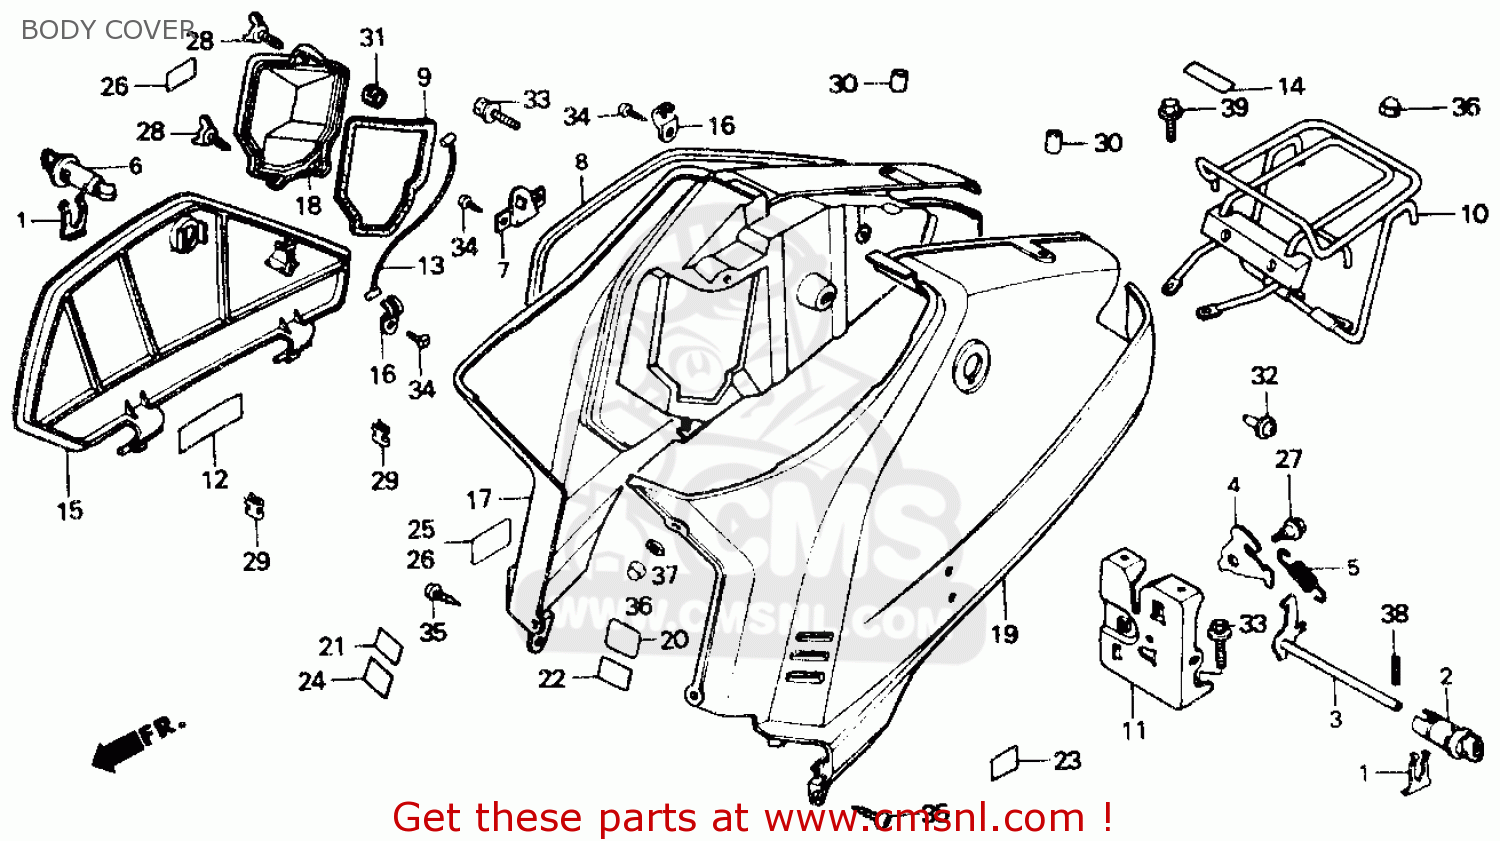 1985 Honda aero 50 parts